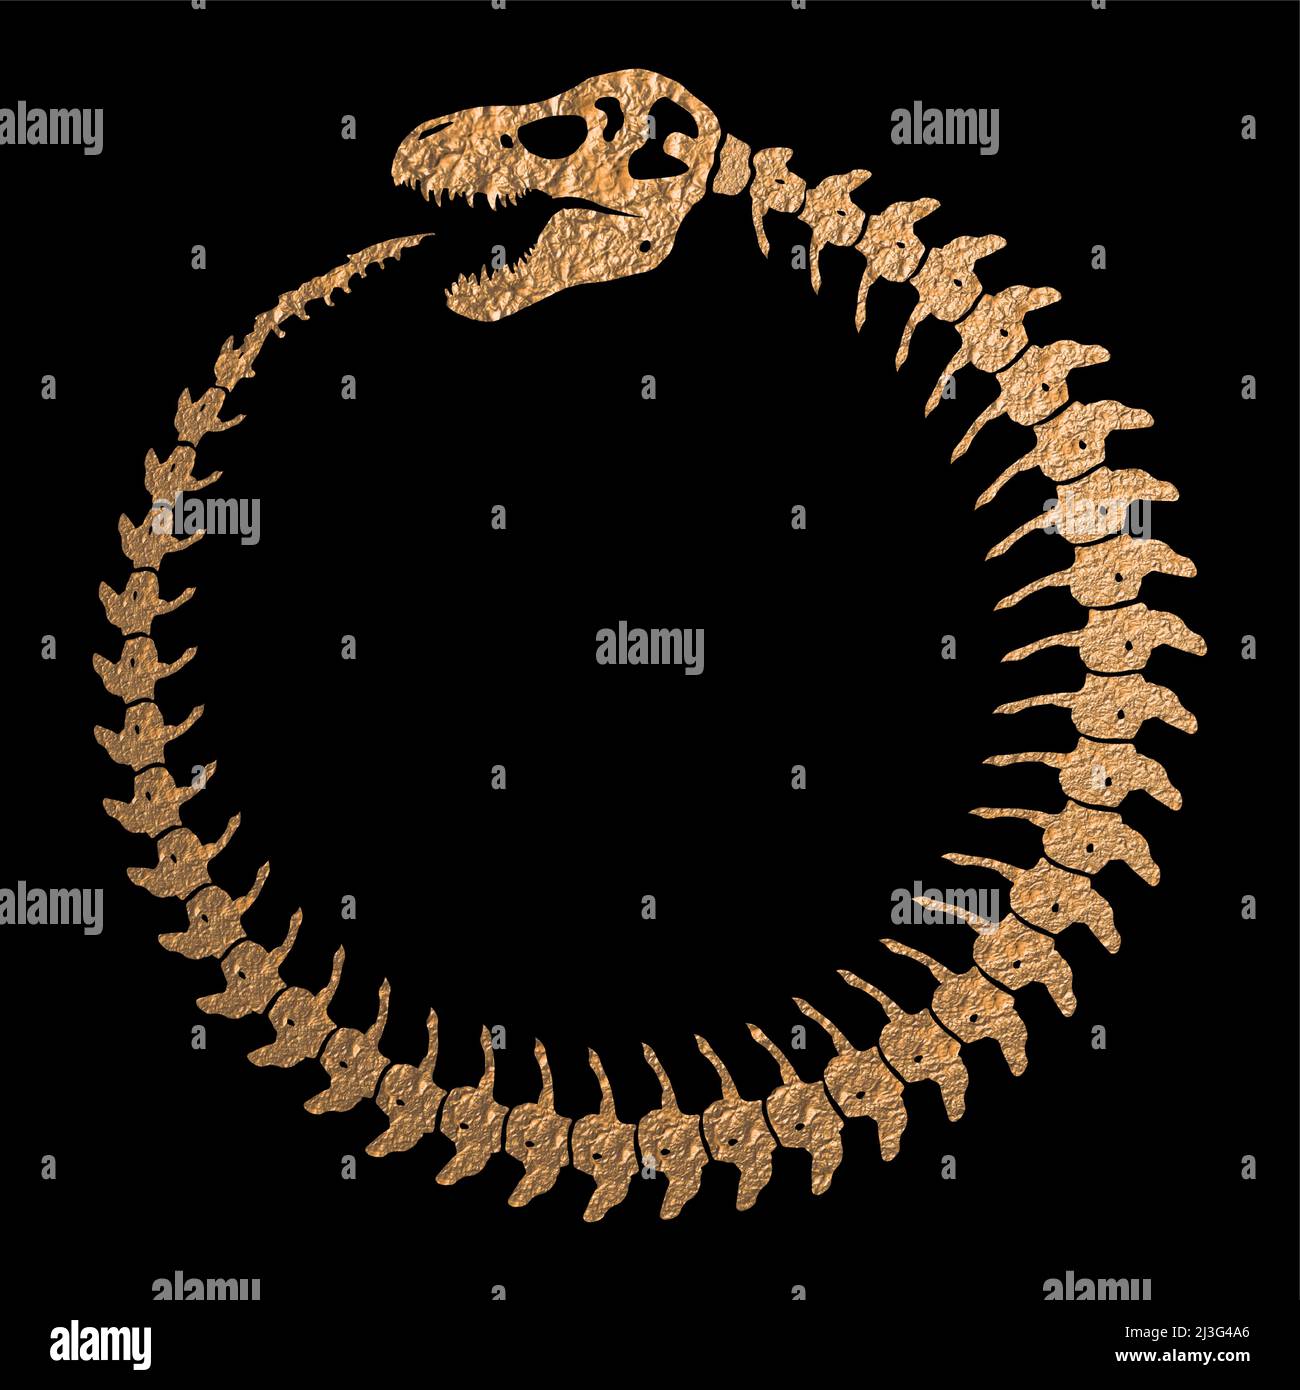 Dinosaur Skeleton come simbolo di Infinity di Ouroboros - tessitura dell'oro grezzo Illustrazione Vettoriale